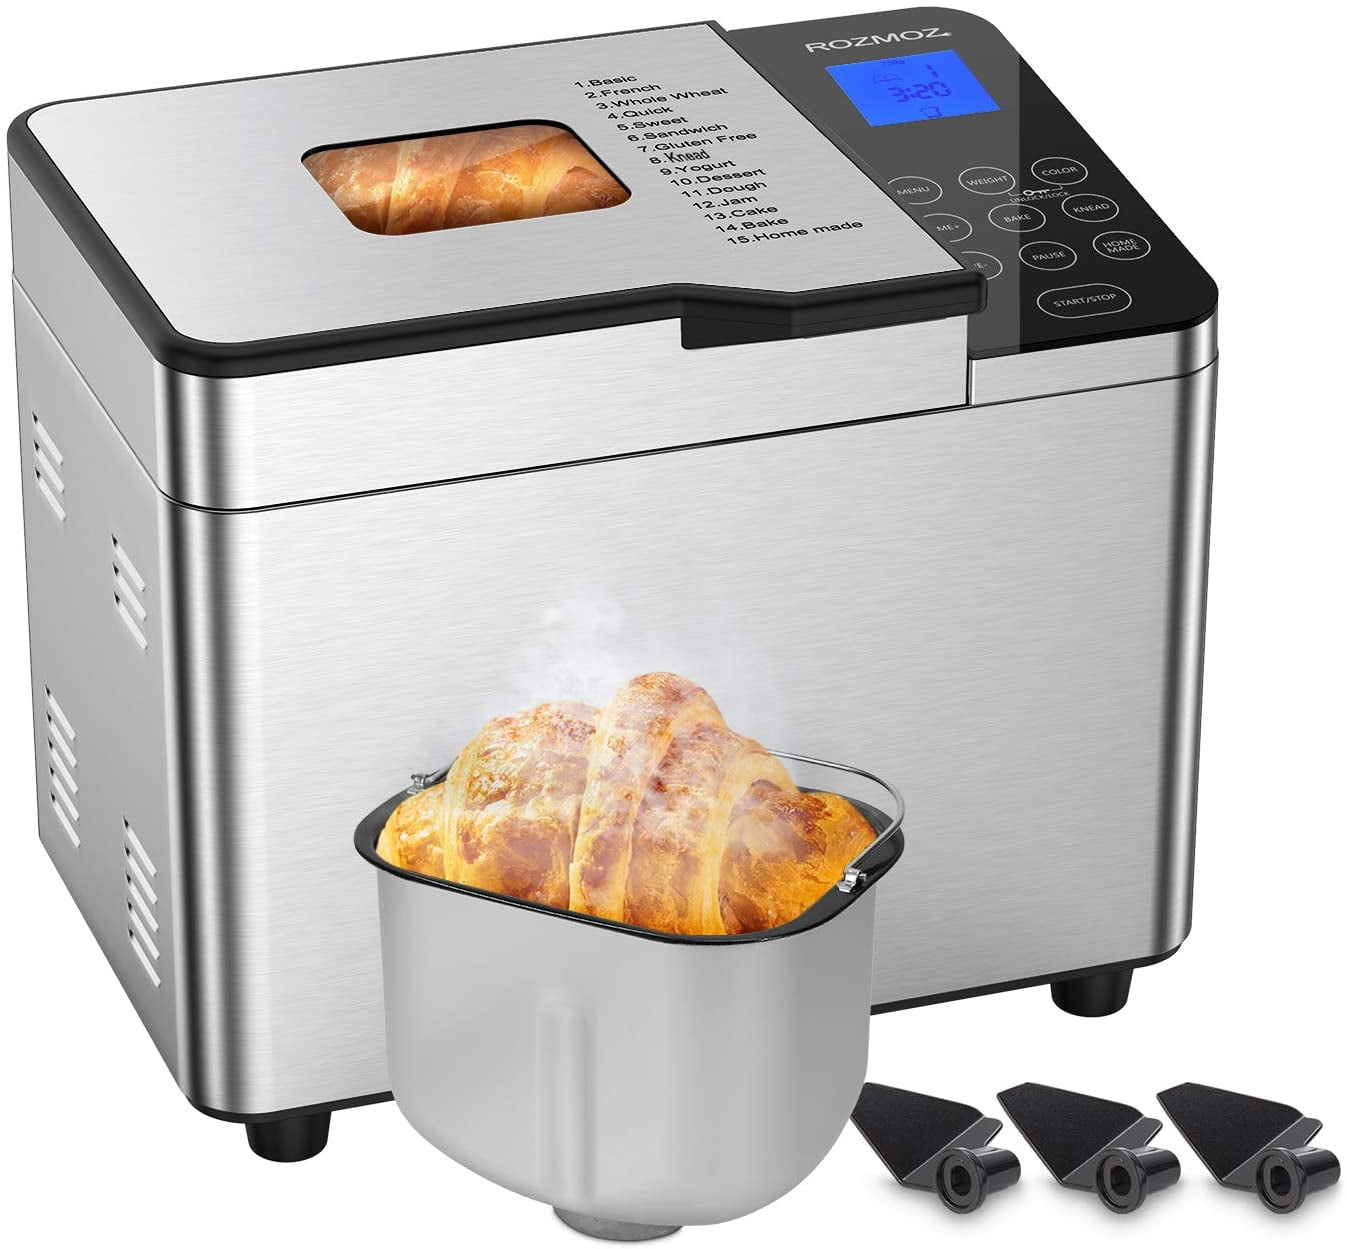 jam yogurt，Bread machine LED display 220V baking kitchen cooking bread maker with 19 Automatic Programs for bread dough smart sprinkler NAFE Bread maker 15-hour reservation time